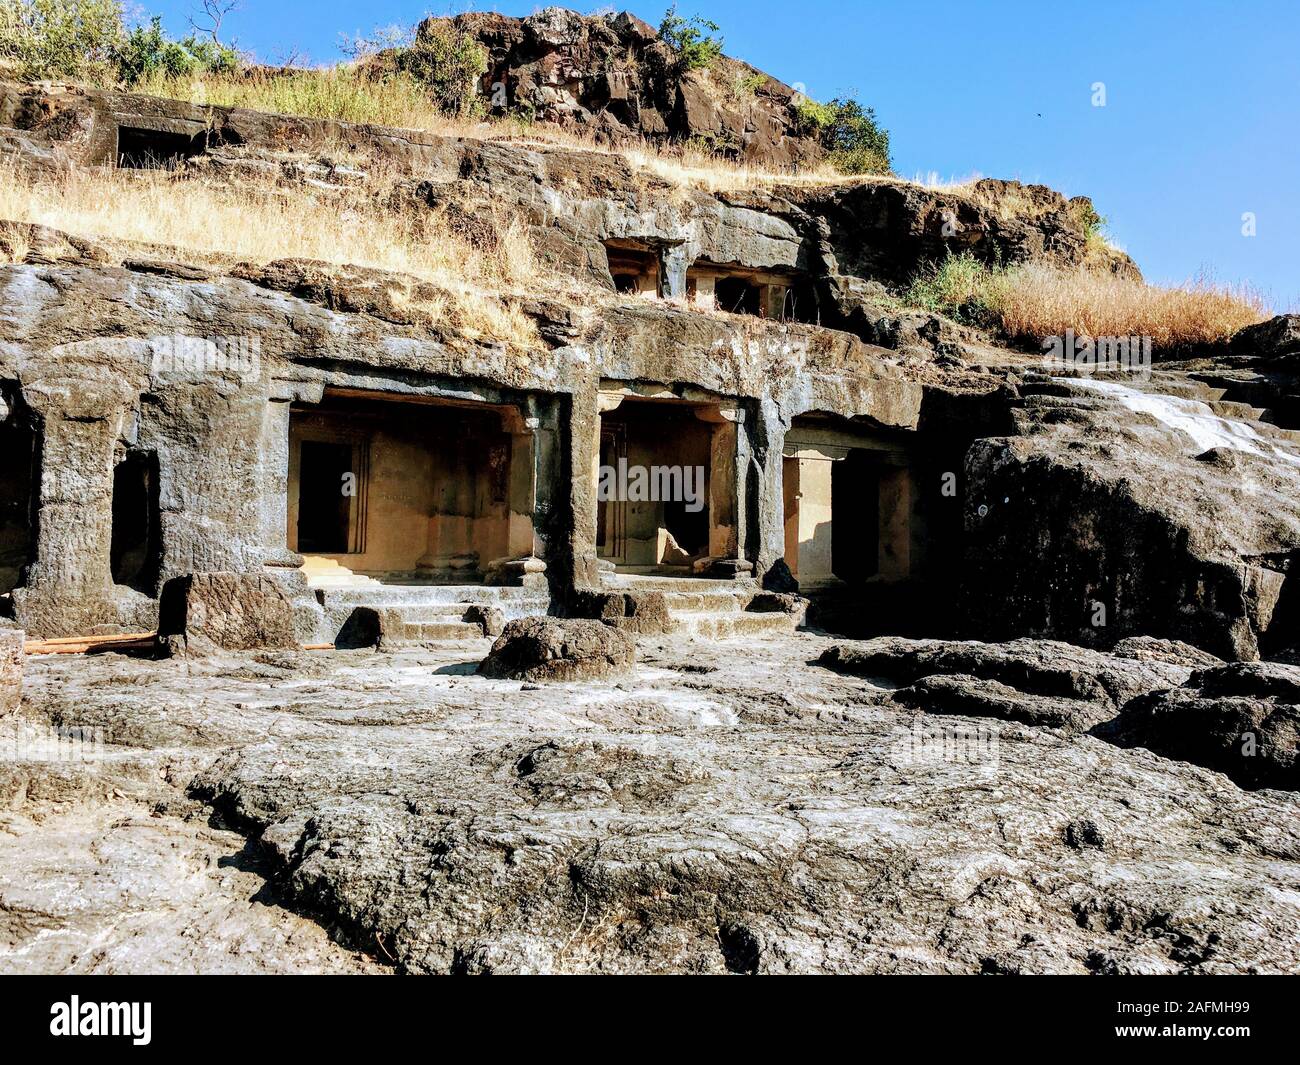 Grotte di Ajanta sono 30 rock-cut grotta buddista monumenti risalenti al II secolo a.c. a circa 480 CE in Aurangabad distretto di Maharashtra, stato dell India. Foto Stock